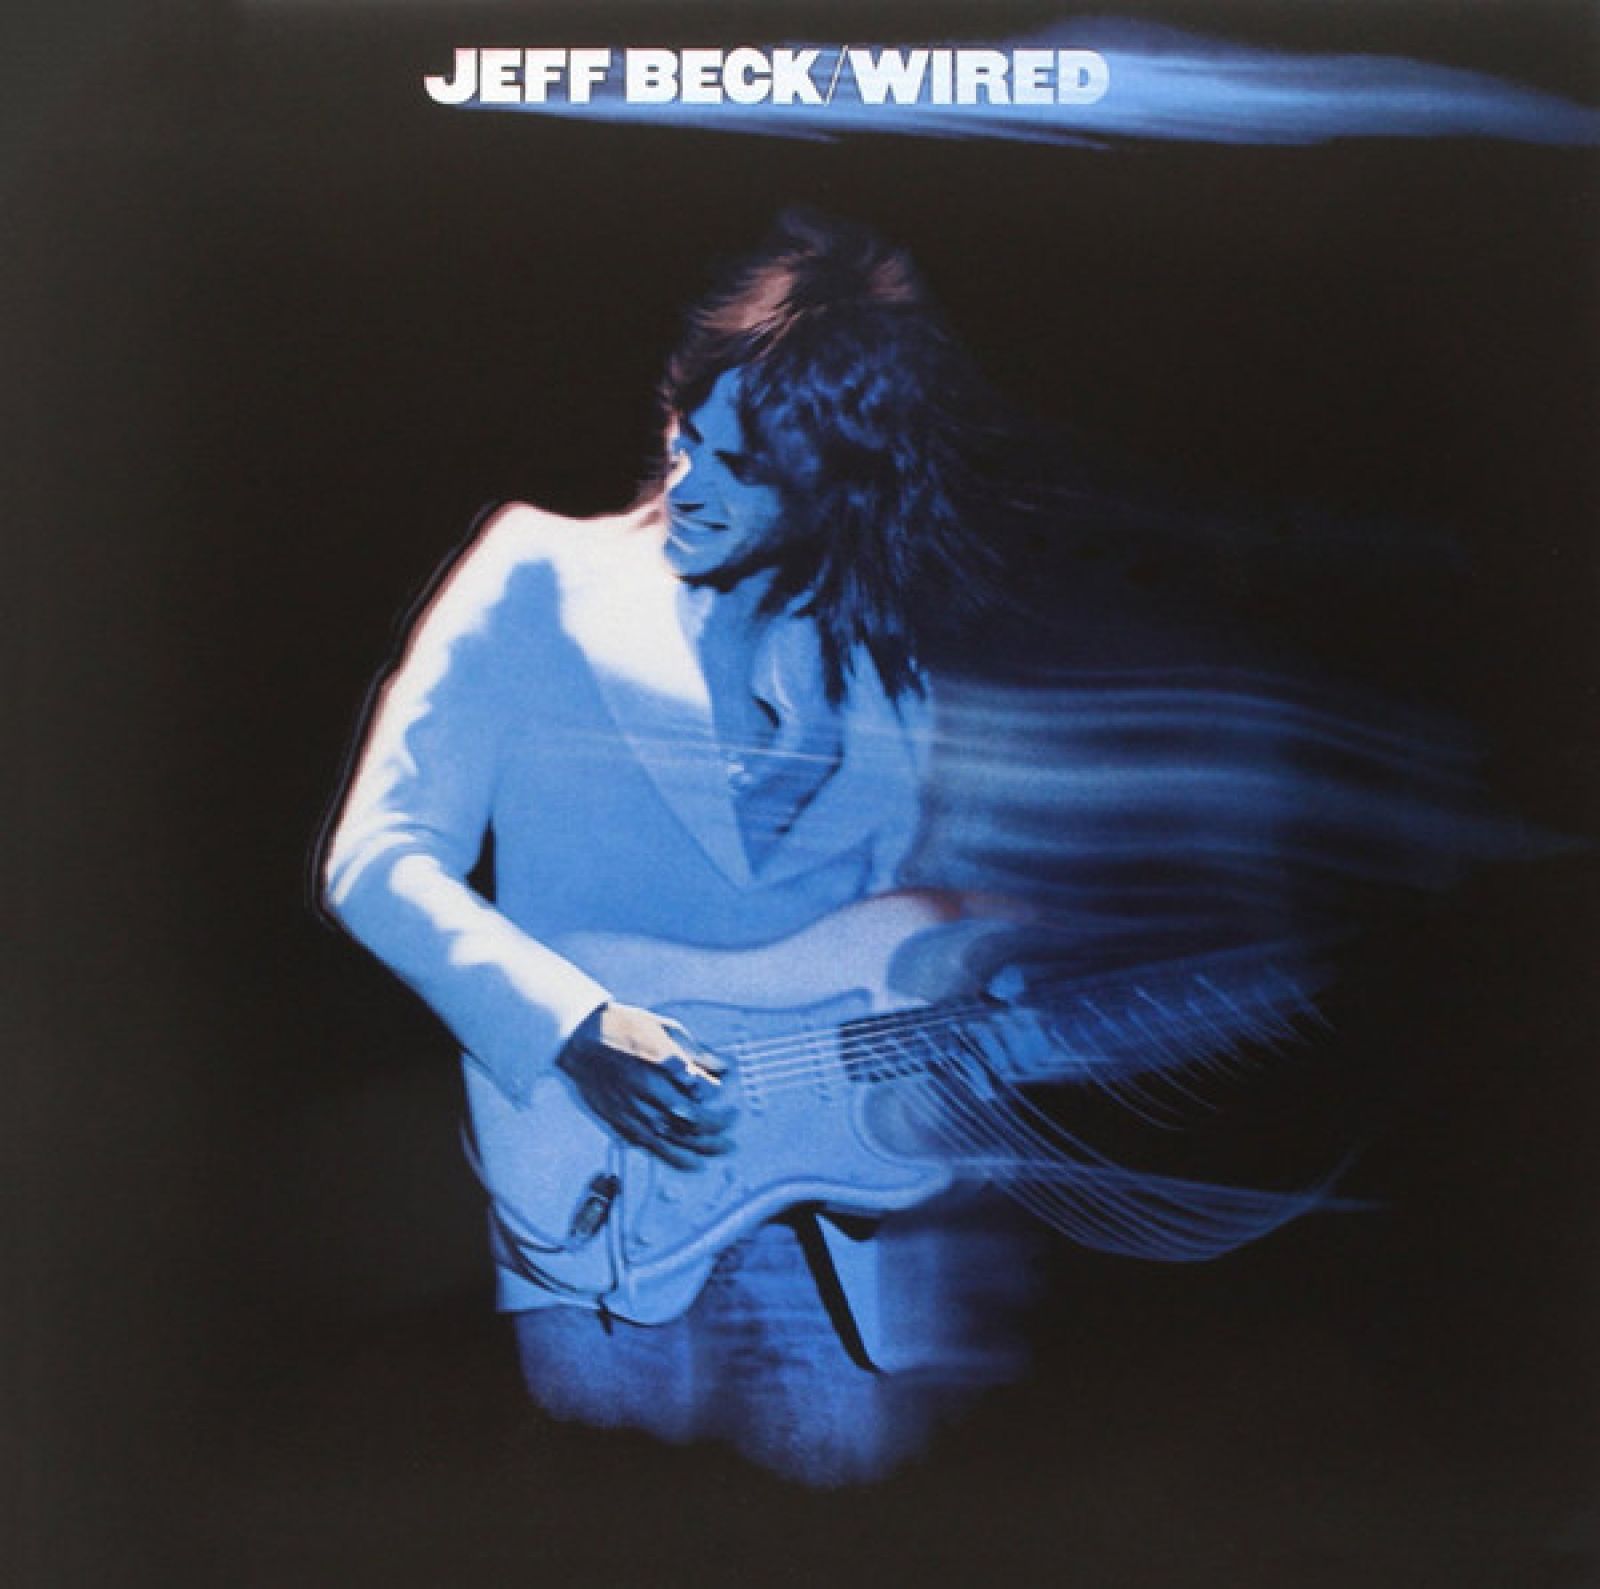 Виниловая пластинка Beck, Jeff, Wired (8713748980351) jeff beck wired vinyl 180 gram